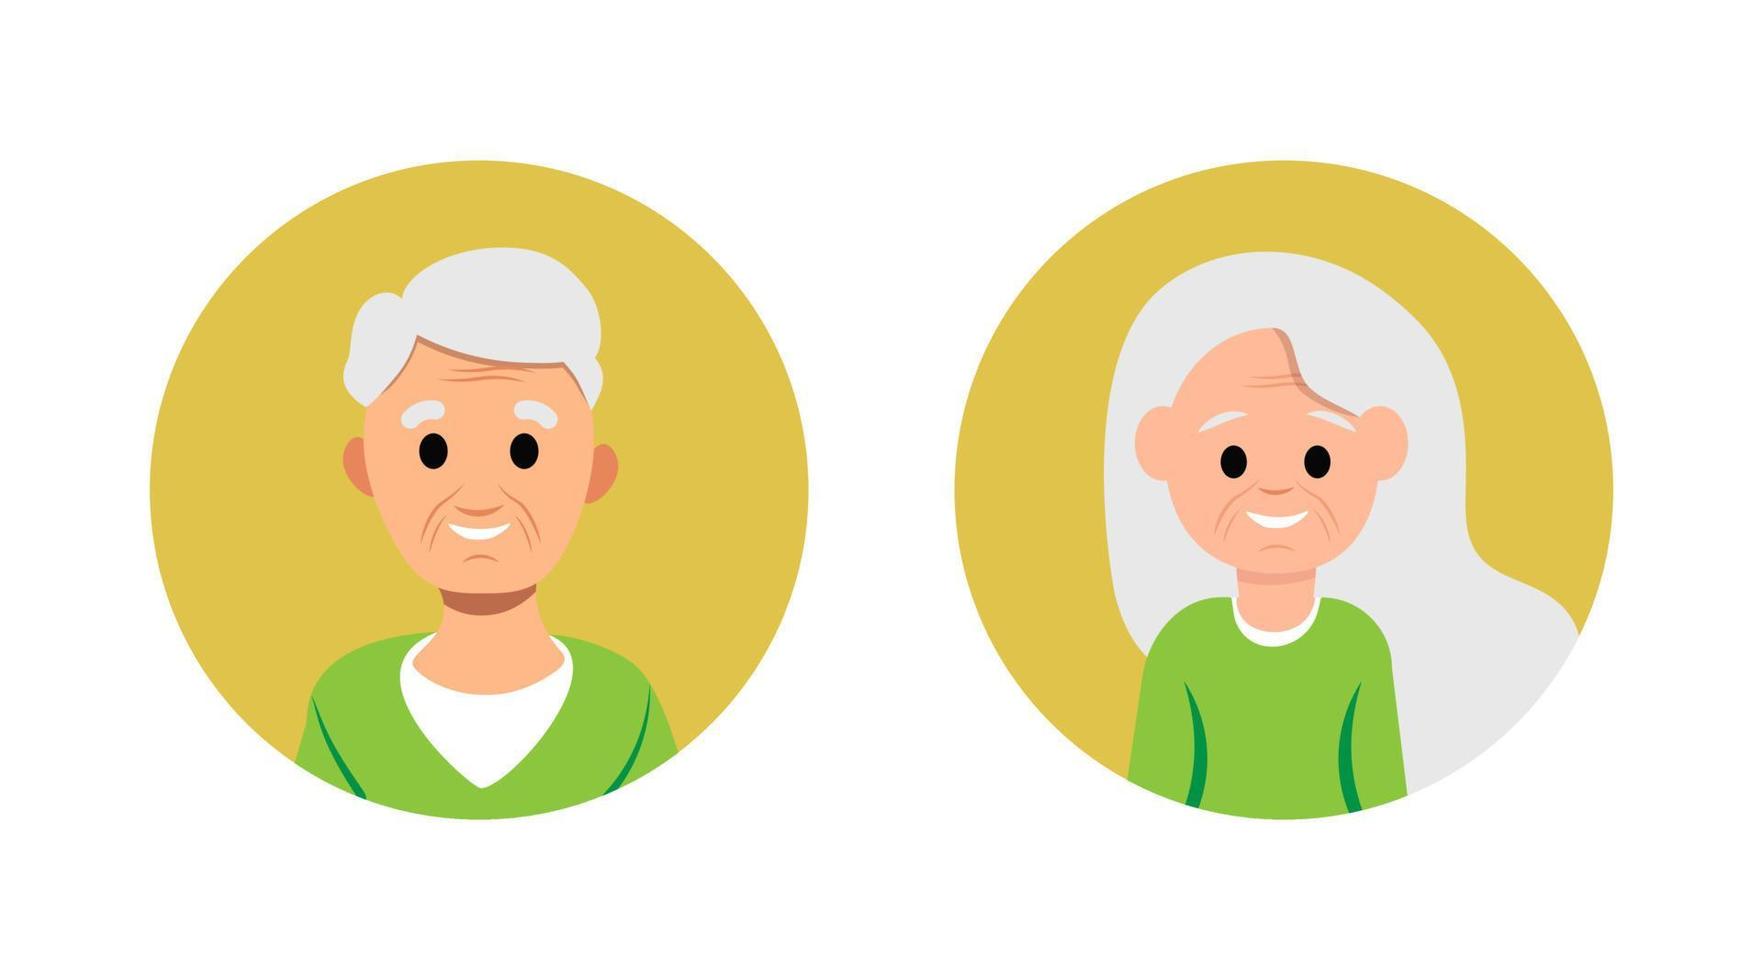 gammal mogen kvinna och man avatar gladlynt leende ansikte platt karaktär isolerad vektoruppsättning person mormor och morfar porträtt människor huvud äldre ålder pensionering vektor